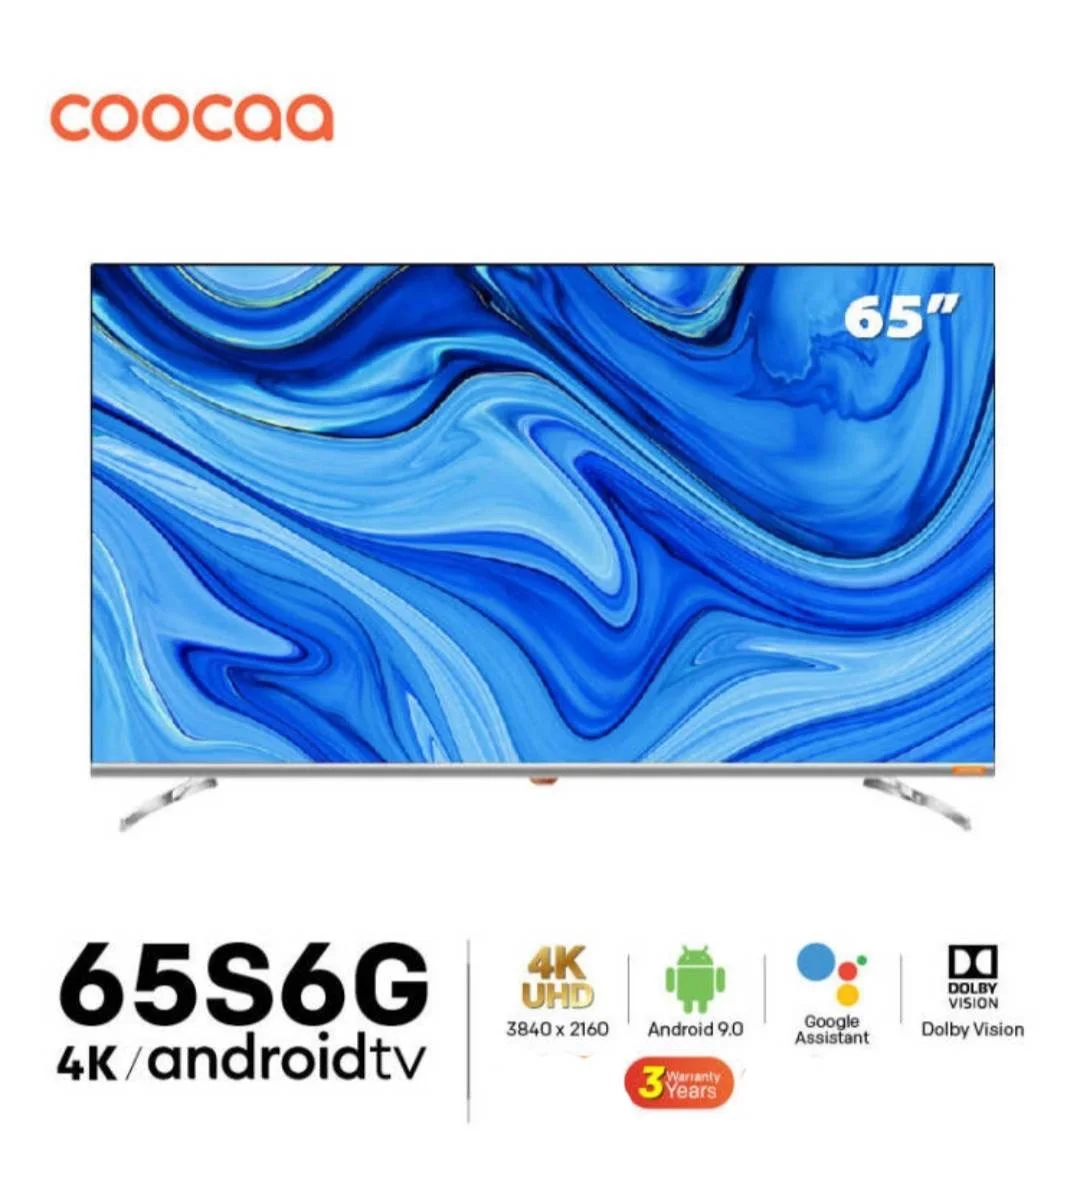 พร้อมส่ง!! COOCAA ทีวี 65 นิ้ว Inch Smart TV LED 4K UHD โทรทัศน์ Android9.0 สมาร์ท ทีวี HDR 10 HDMI 65S6G รับประกัน 3 ปี